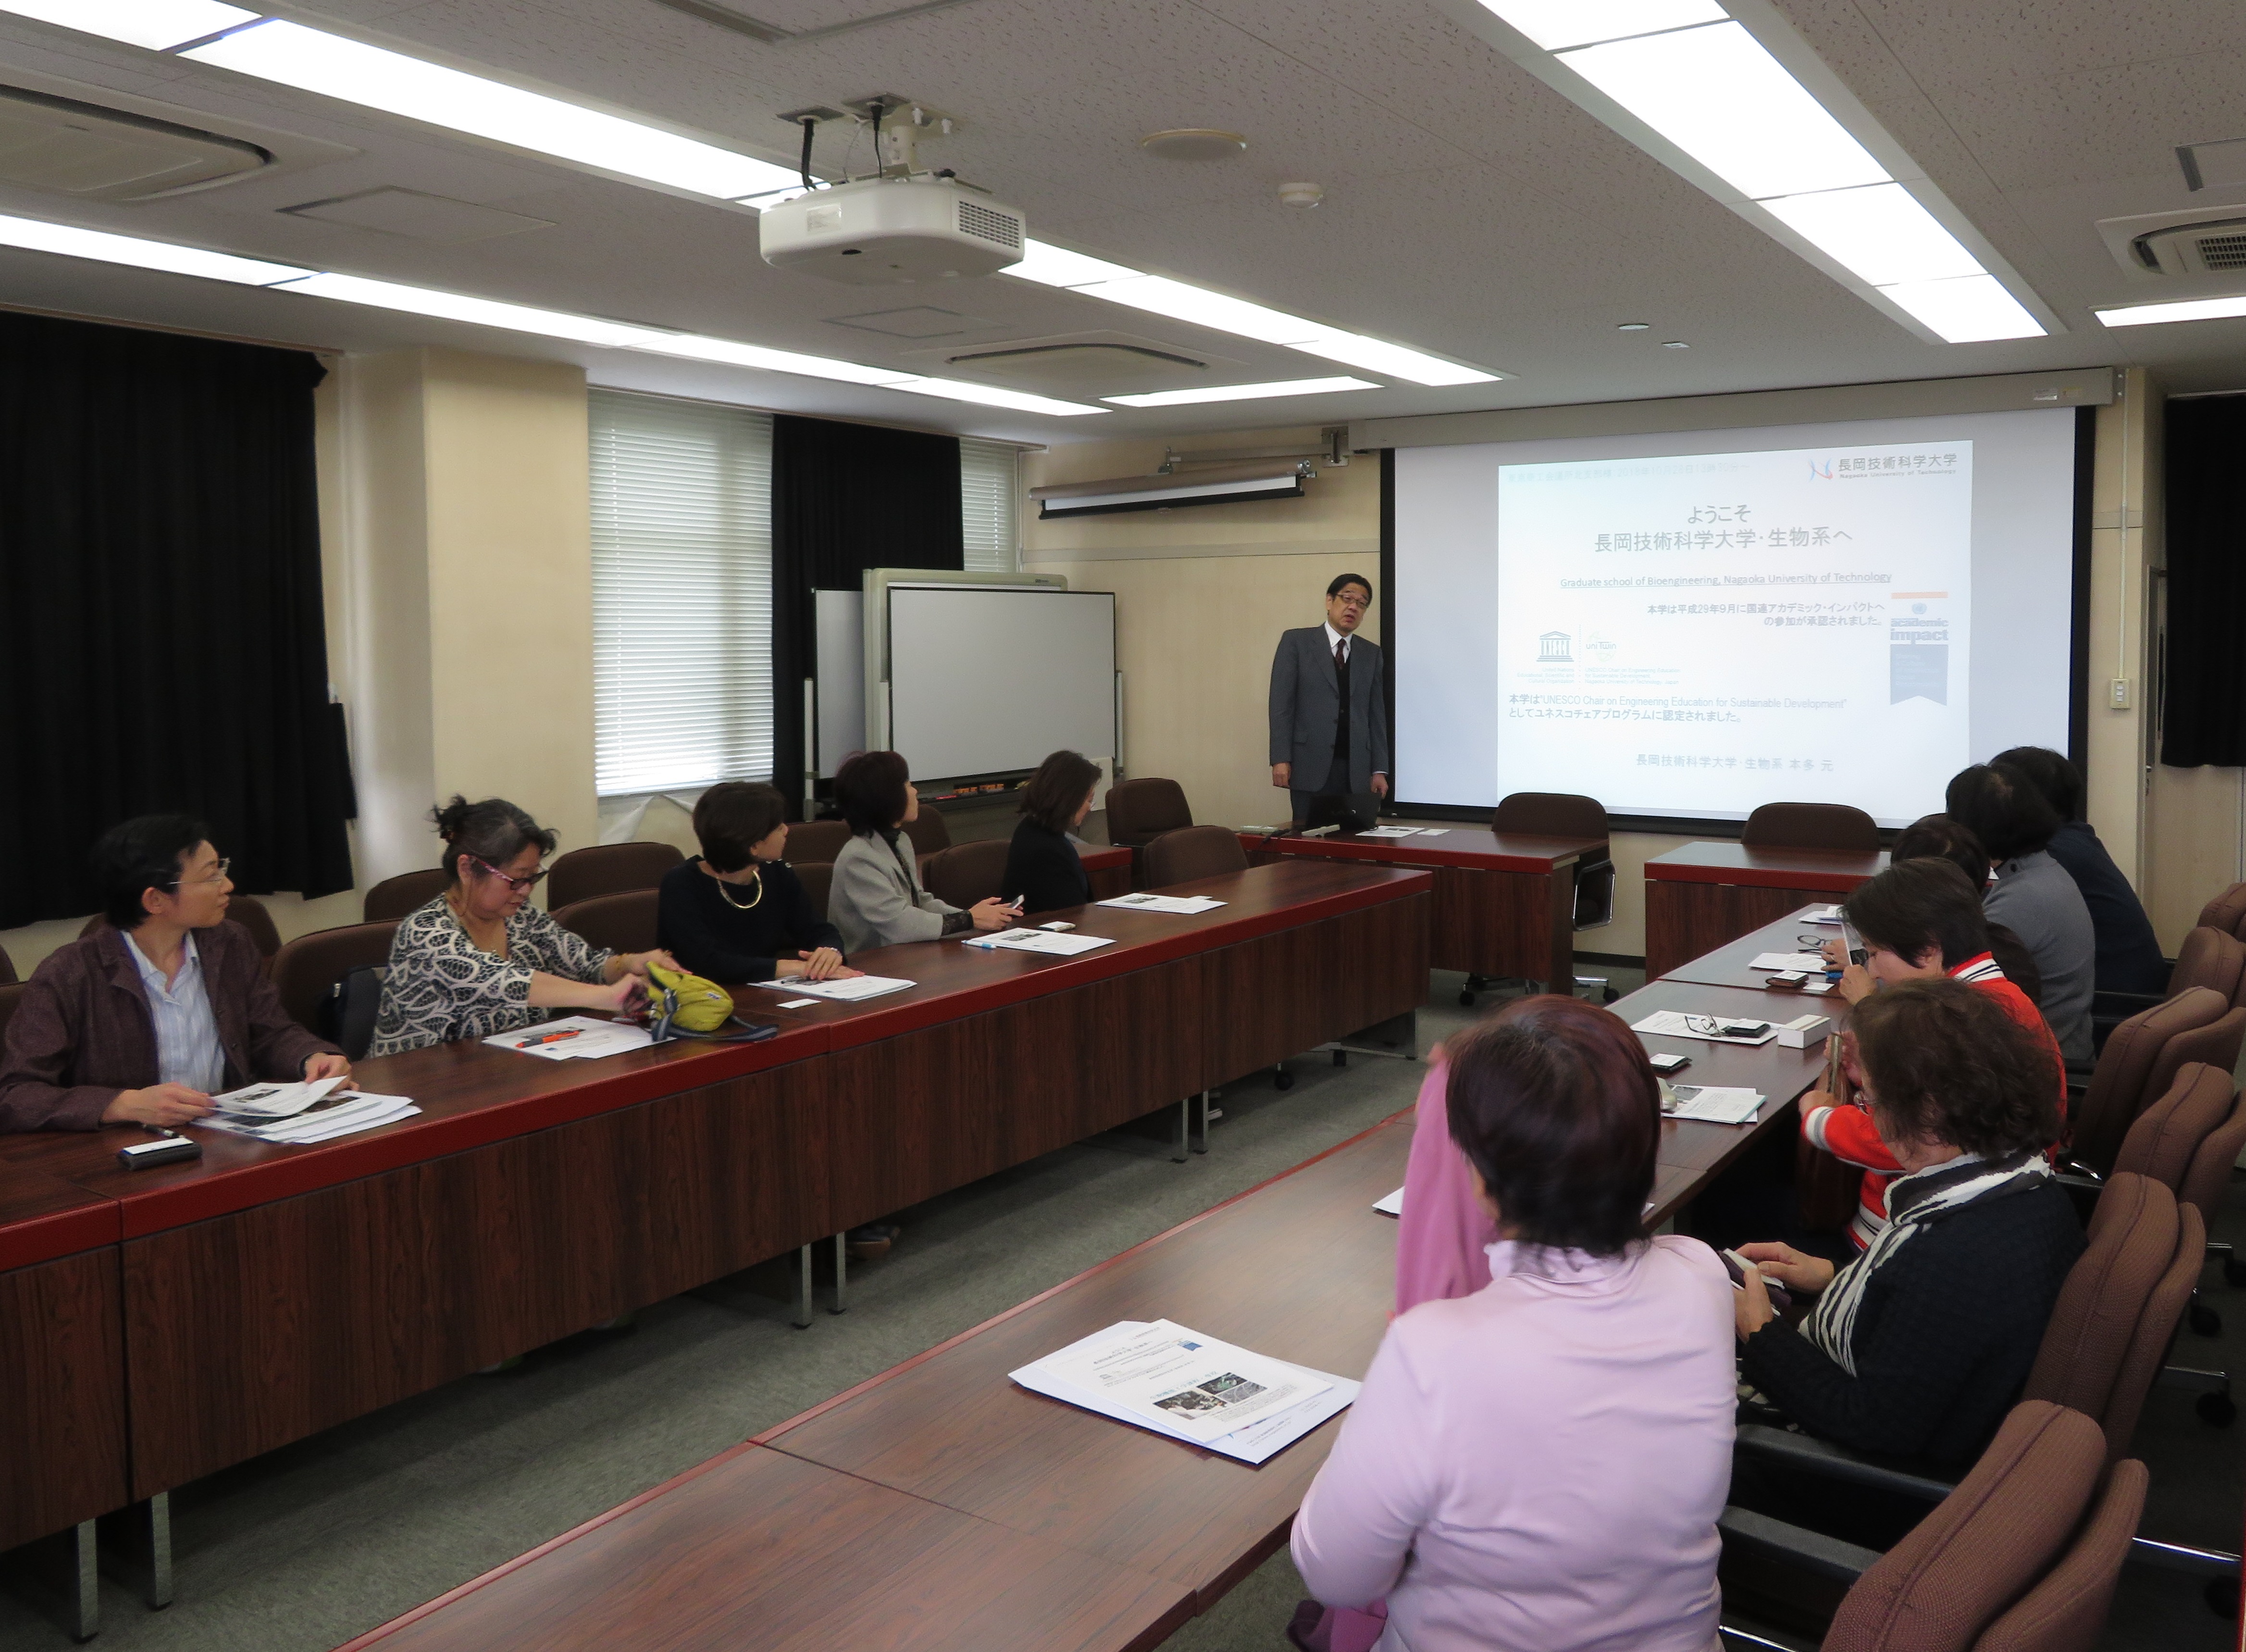 長岡技術科学大学にて熱心に講義を聴く参加者の皆さま